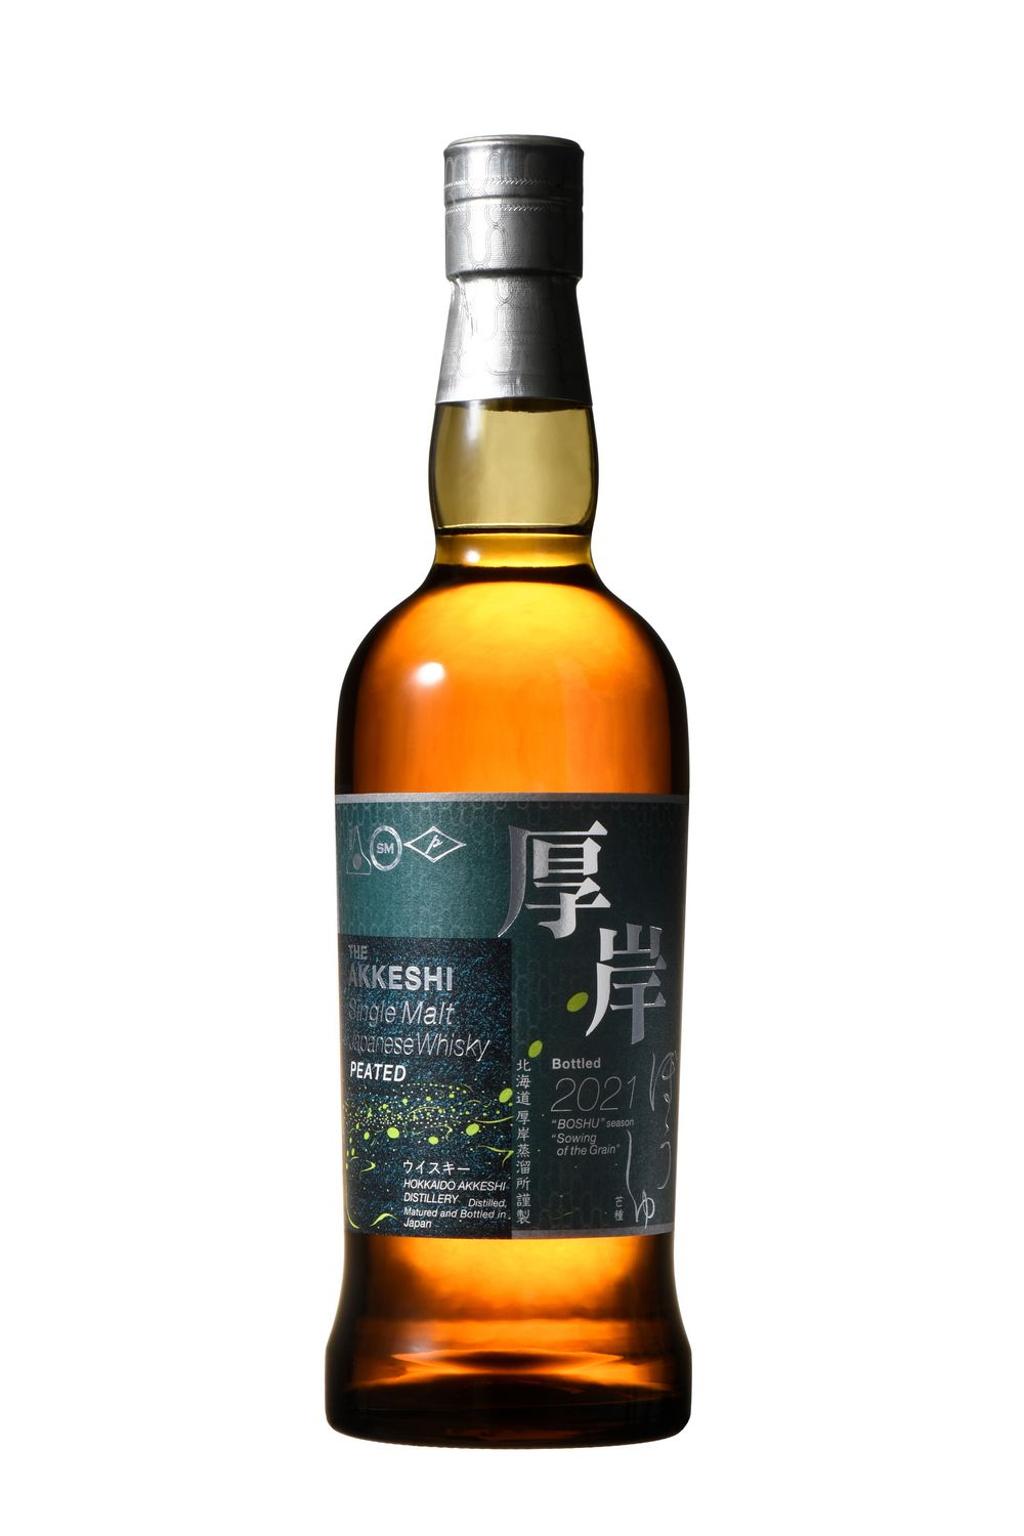 酒如坊」夏季新品「厚岸」威士忌24節氣系列第3彈「芒種」日本單一麥芽